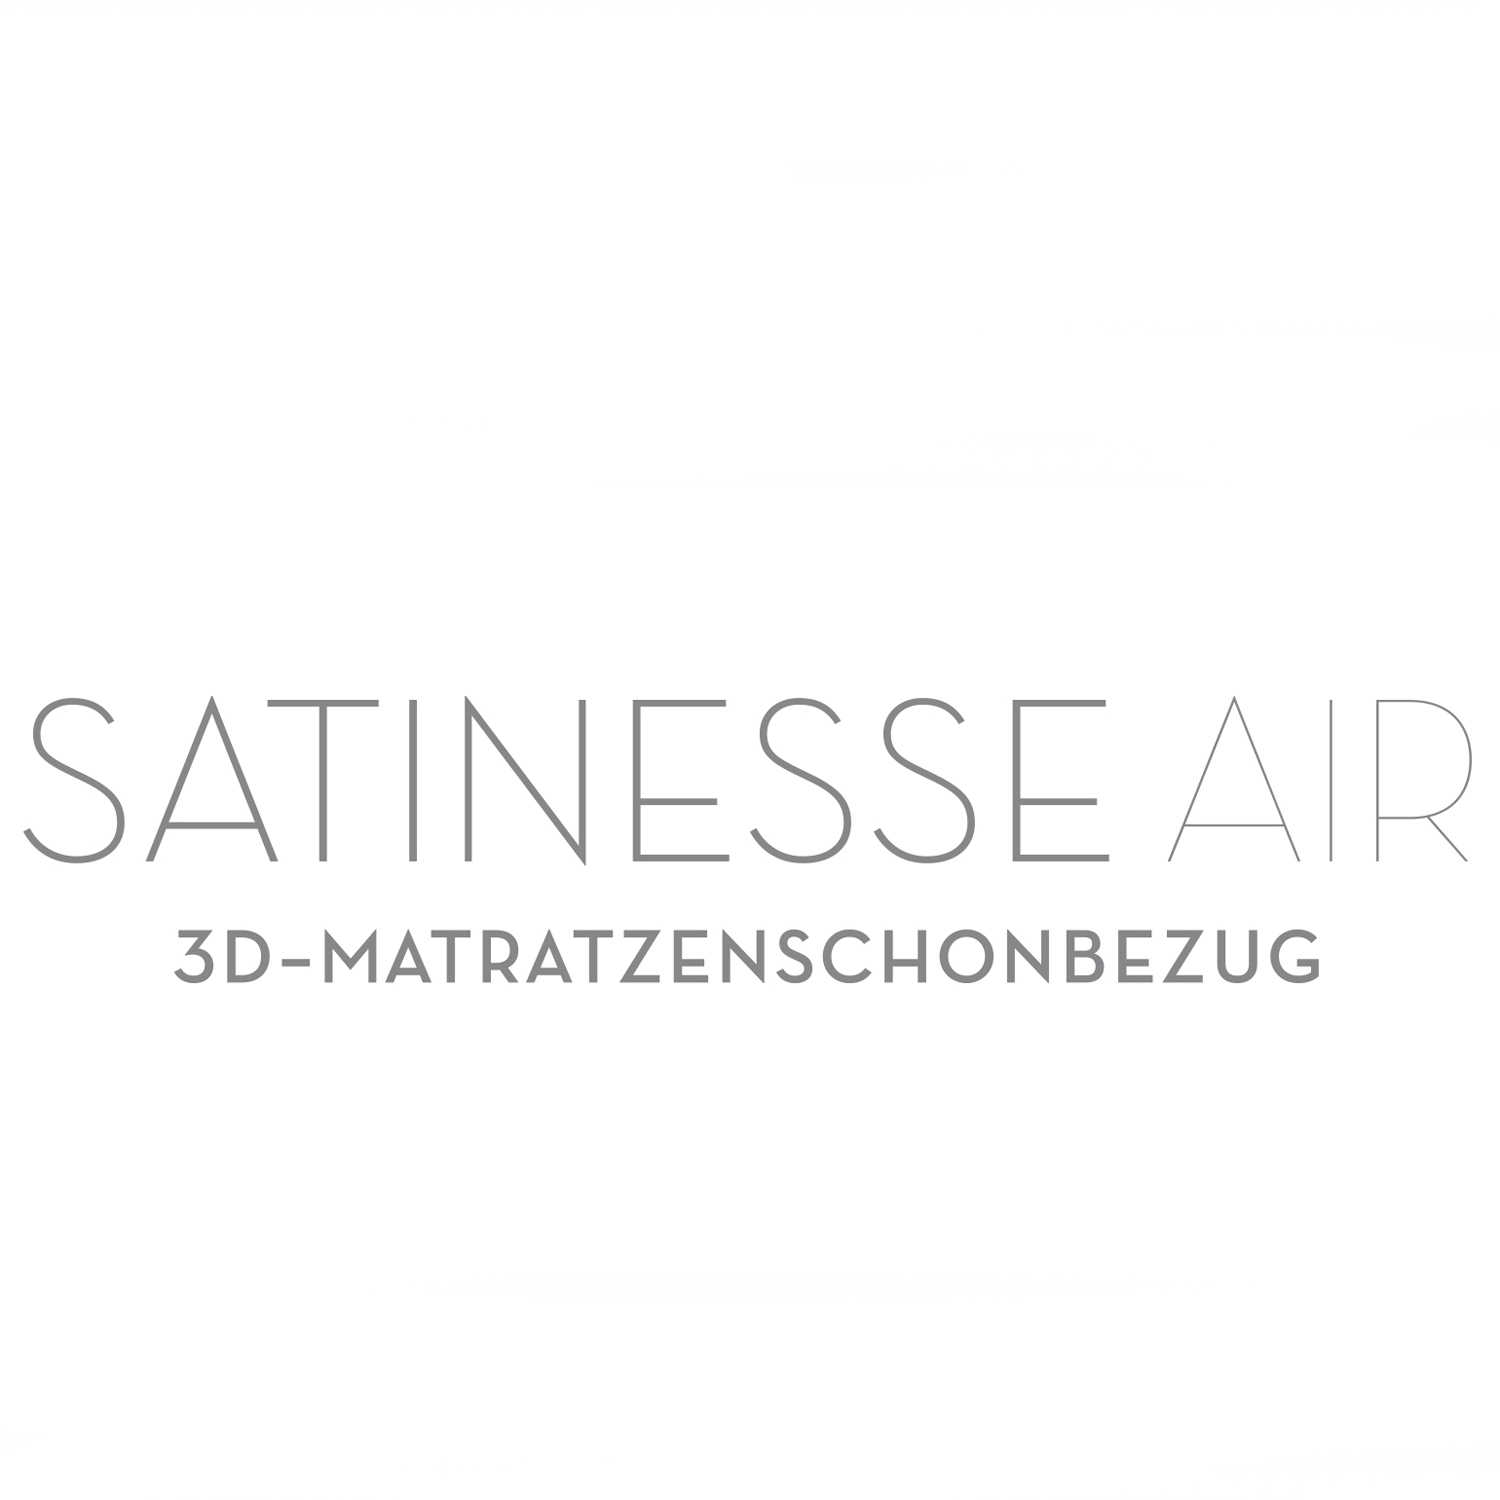 FORMESSE Kissenschonbezug Satinesse Air Silver wollweiß 40x80cm